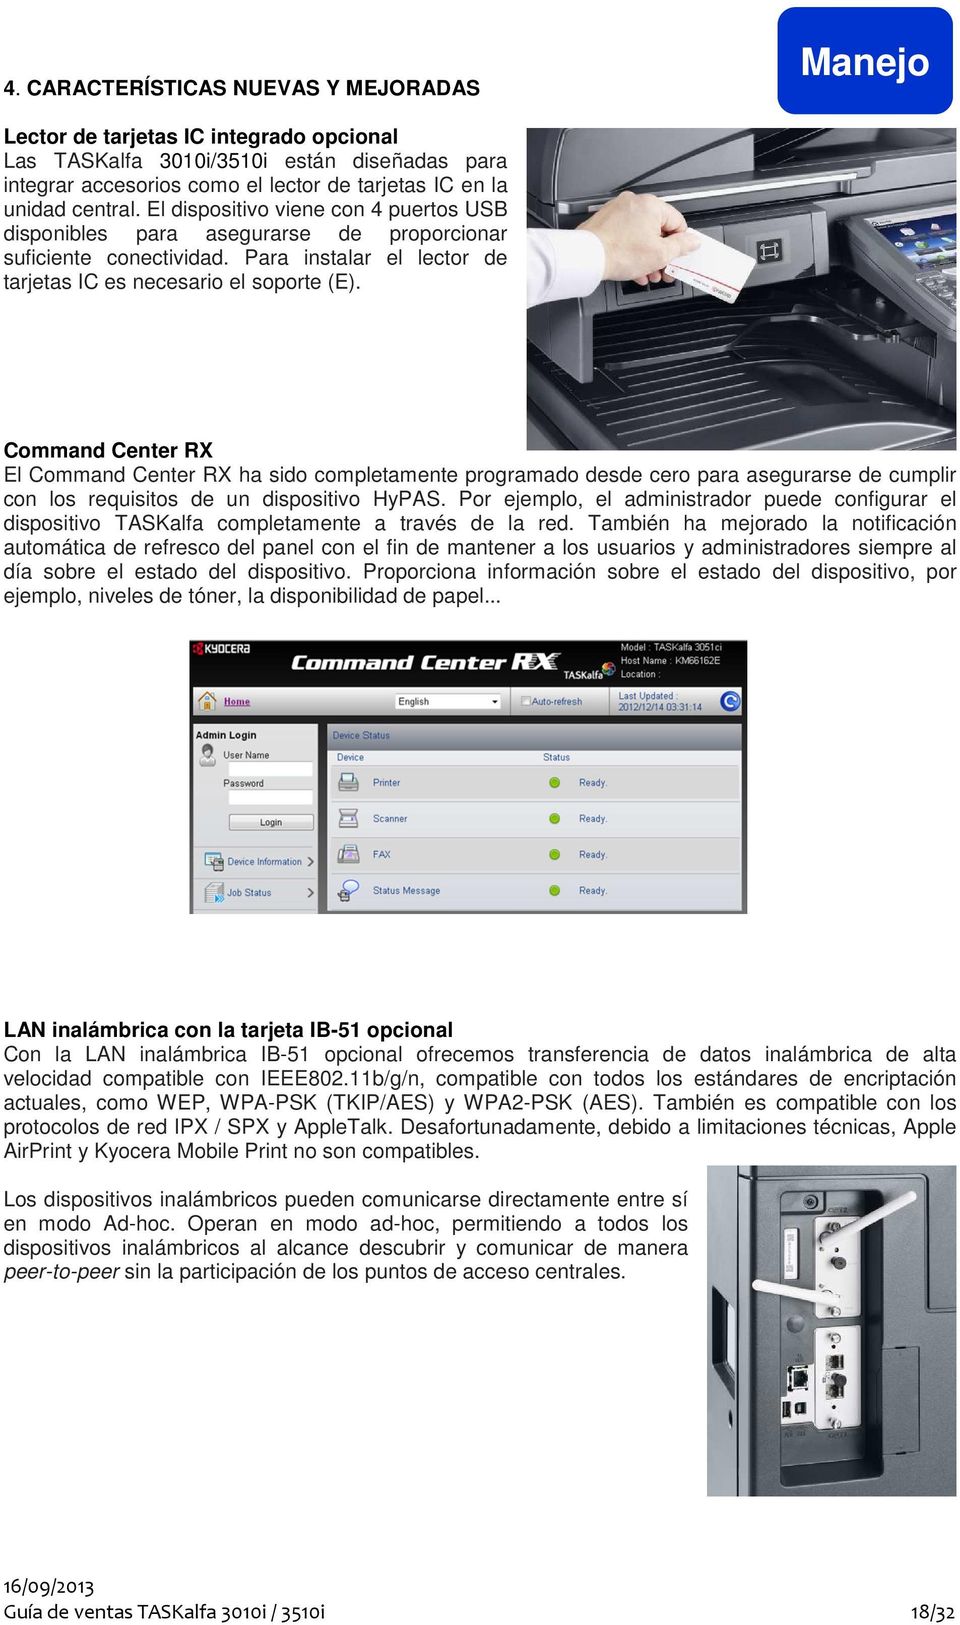 Command Center RX El Command Center RX ha sido completamente programado desde cero para asegurarse de cumplir con los requisitos de un dispositivo HyPAS.